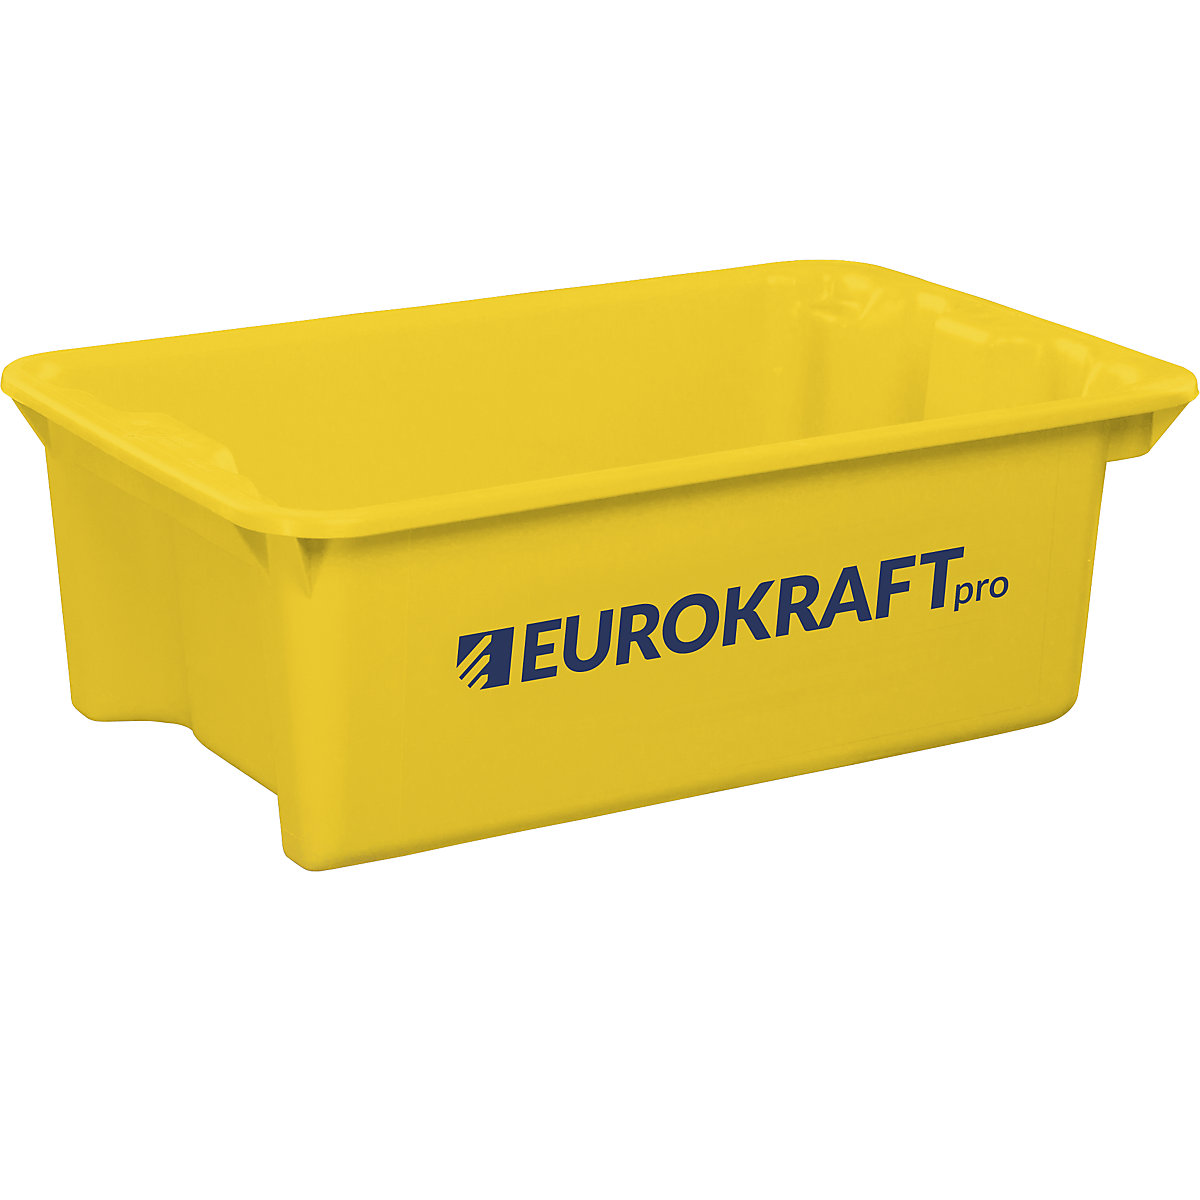 EUROKRAFTpro Drehstapelbehälter aus lebensmittelechtem Polypropylen, Inhalt 34 Liter, VE 3 Stk, Wände und Boden geschlossen, gelb